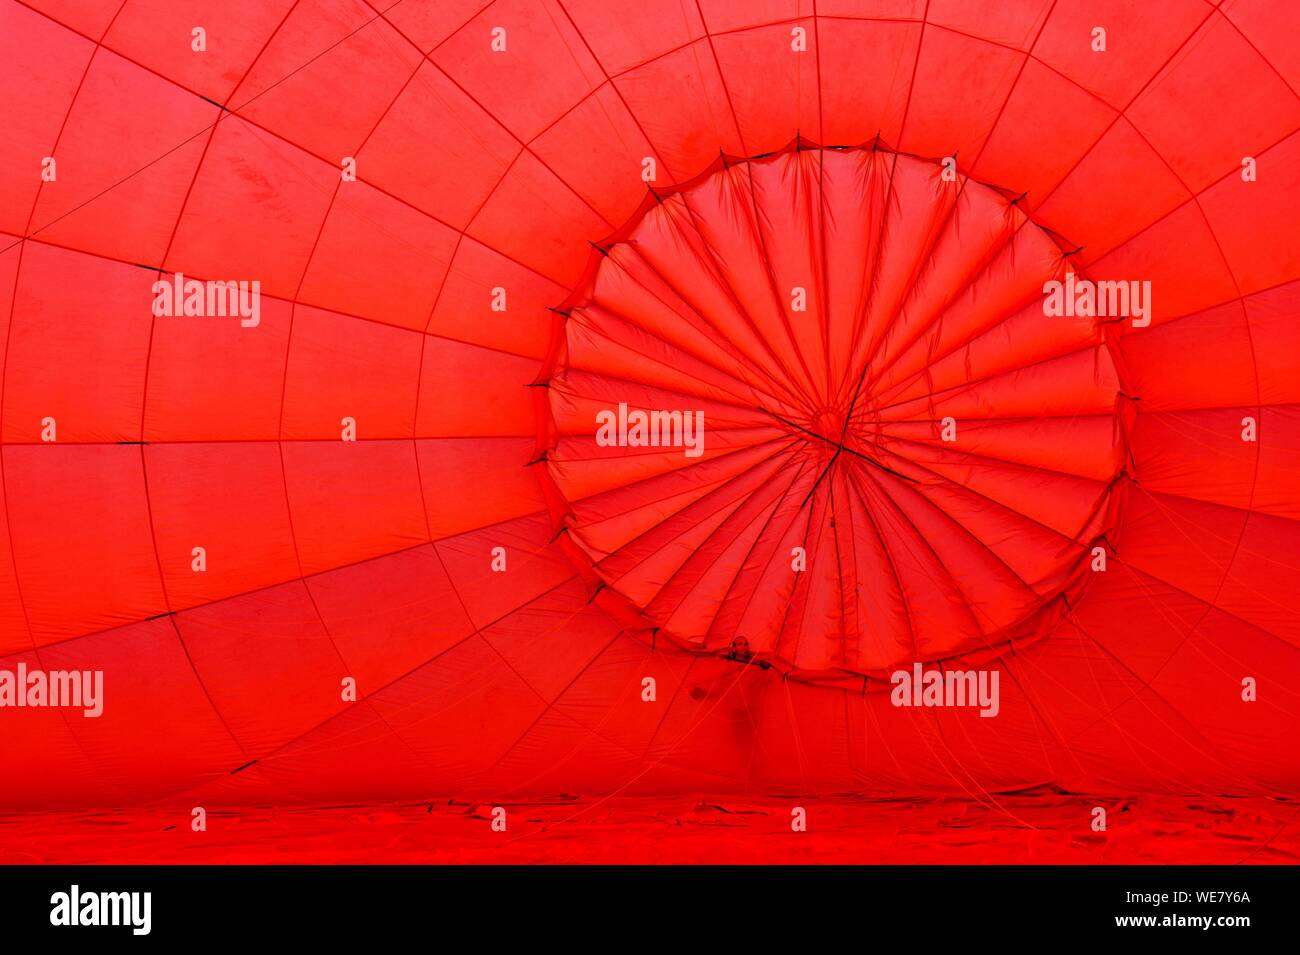 En France, en Dordogne, l'inflation d'un ballon à air chaud Banque D'Images